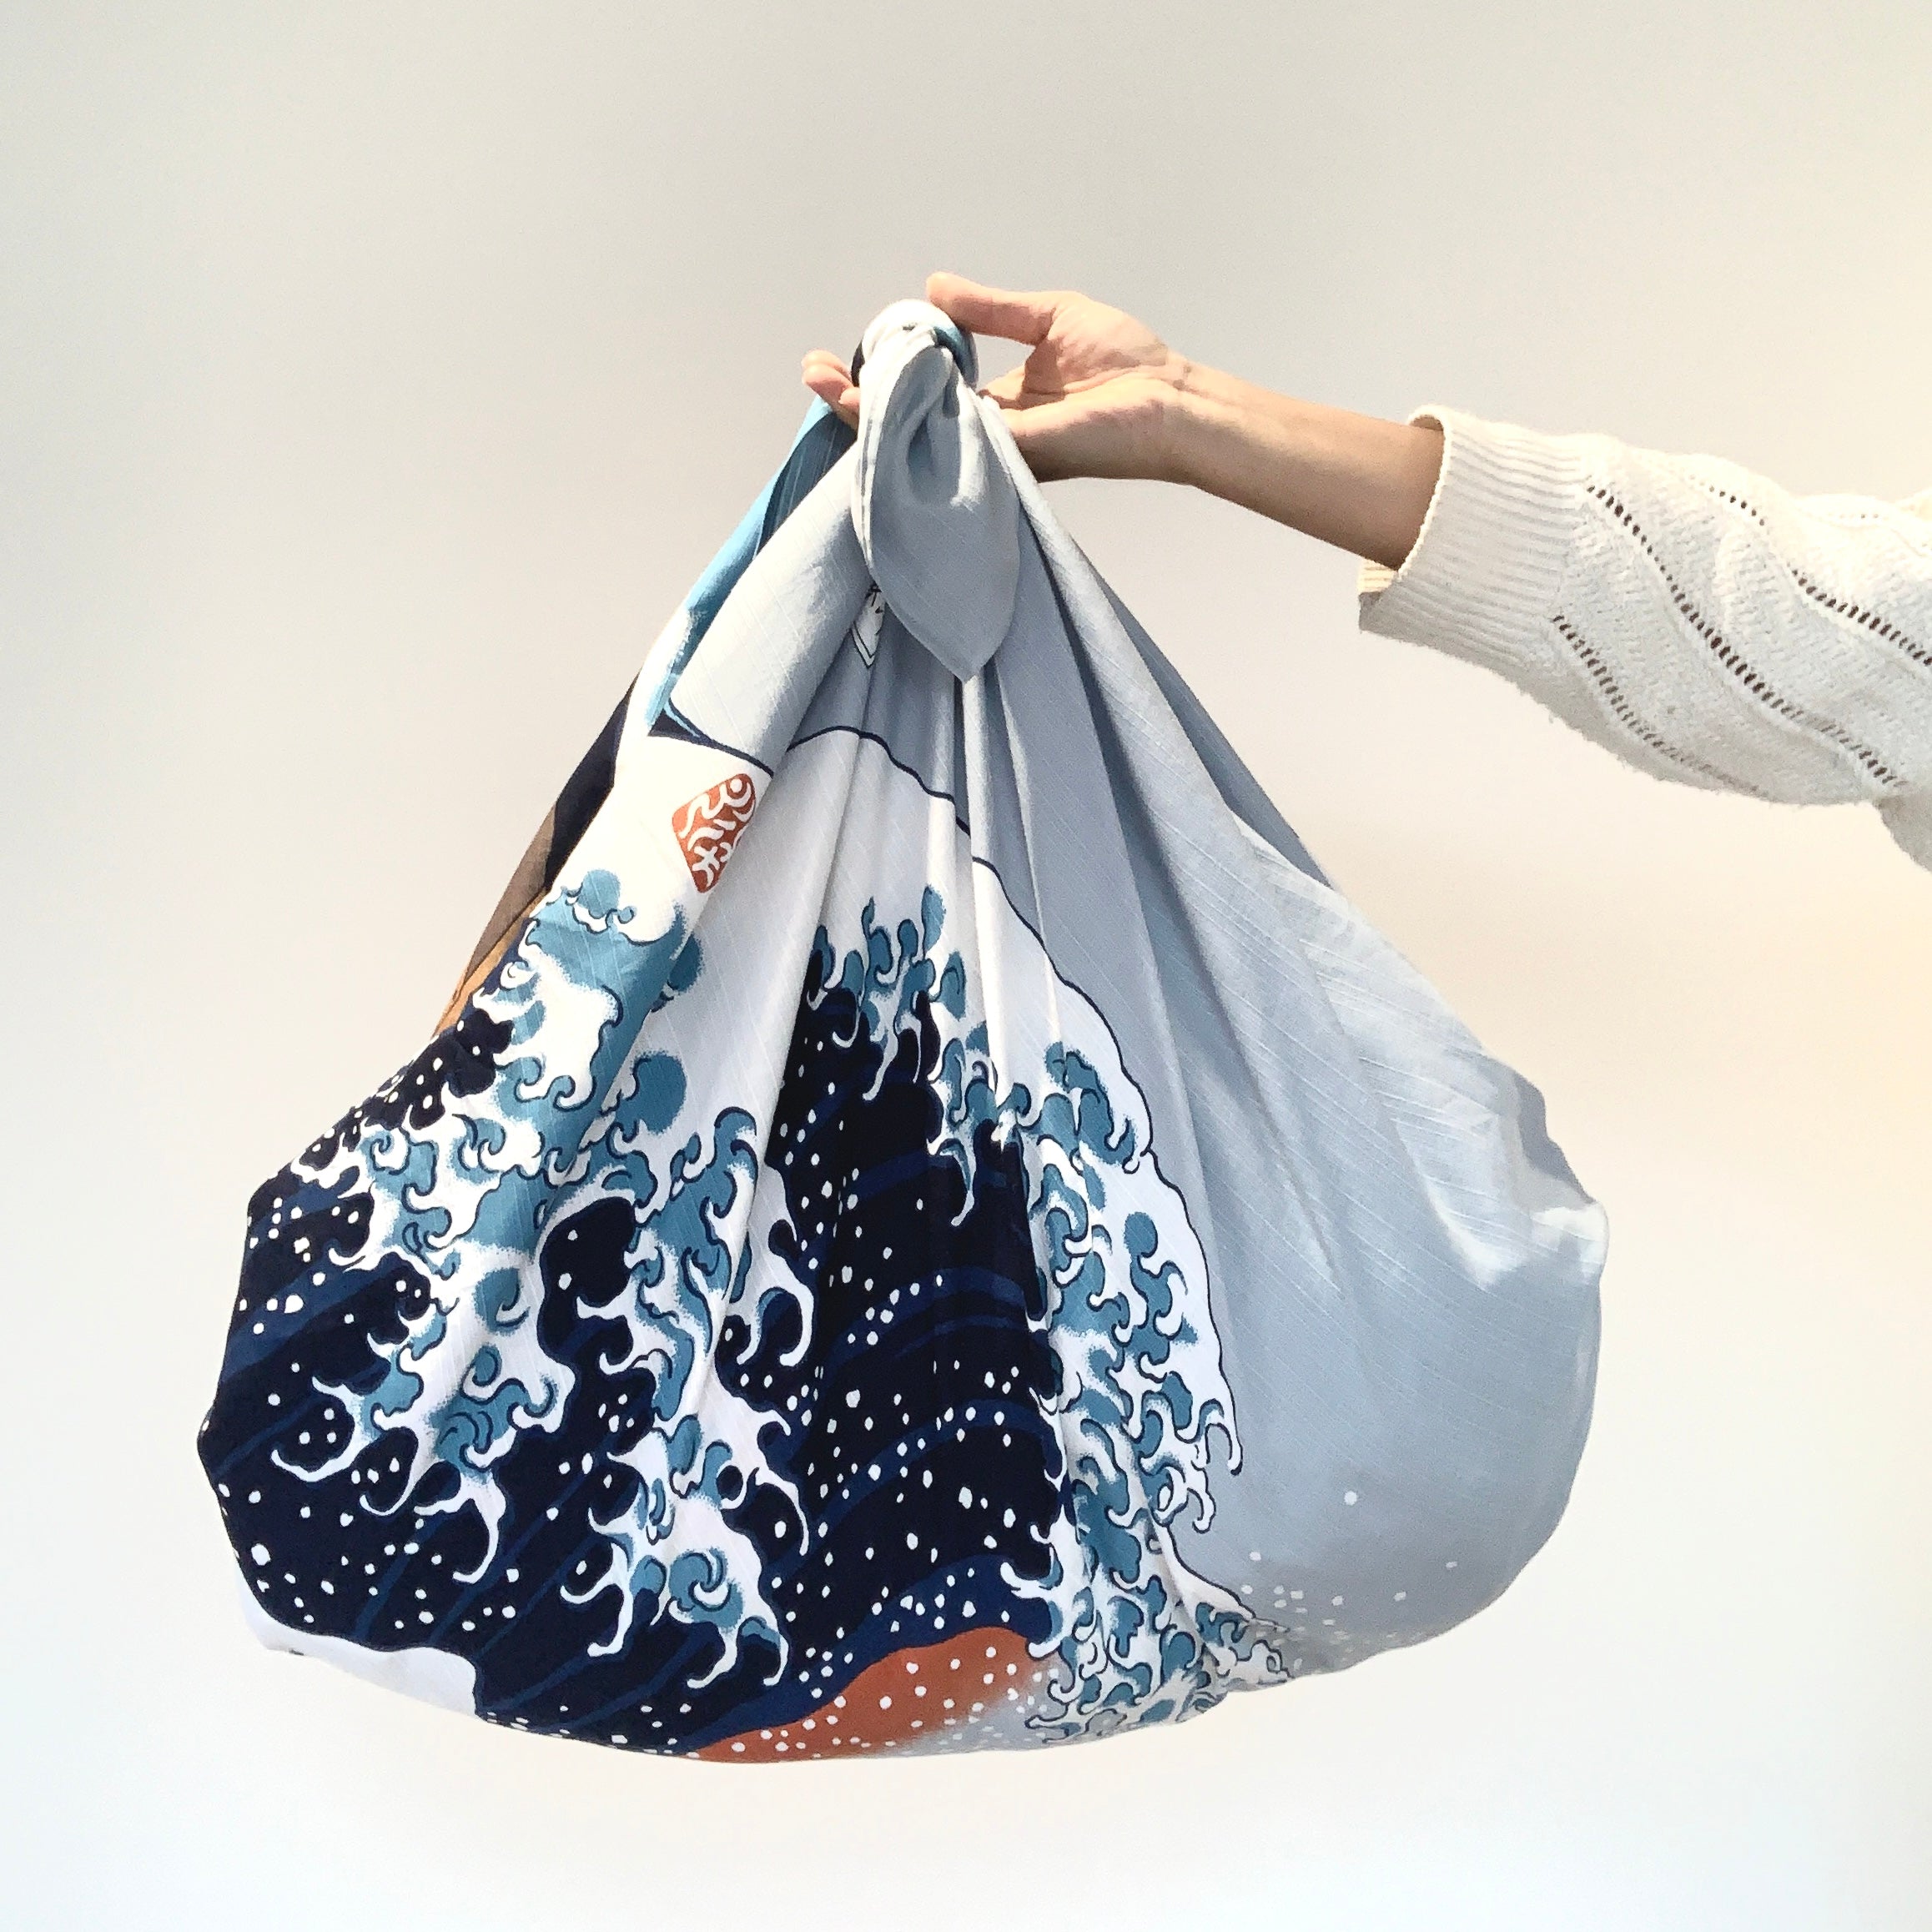 Let's Make a Bag with Furoshiki - YouTube